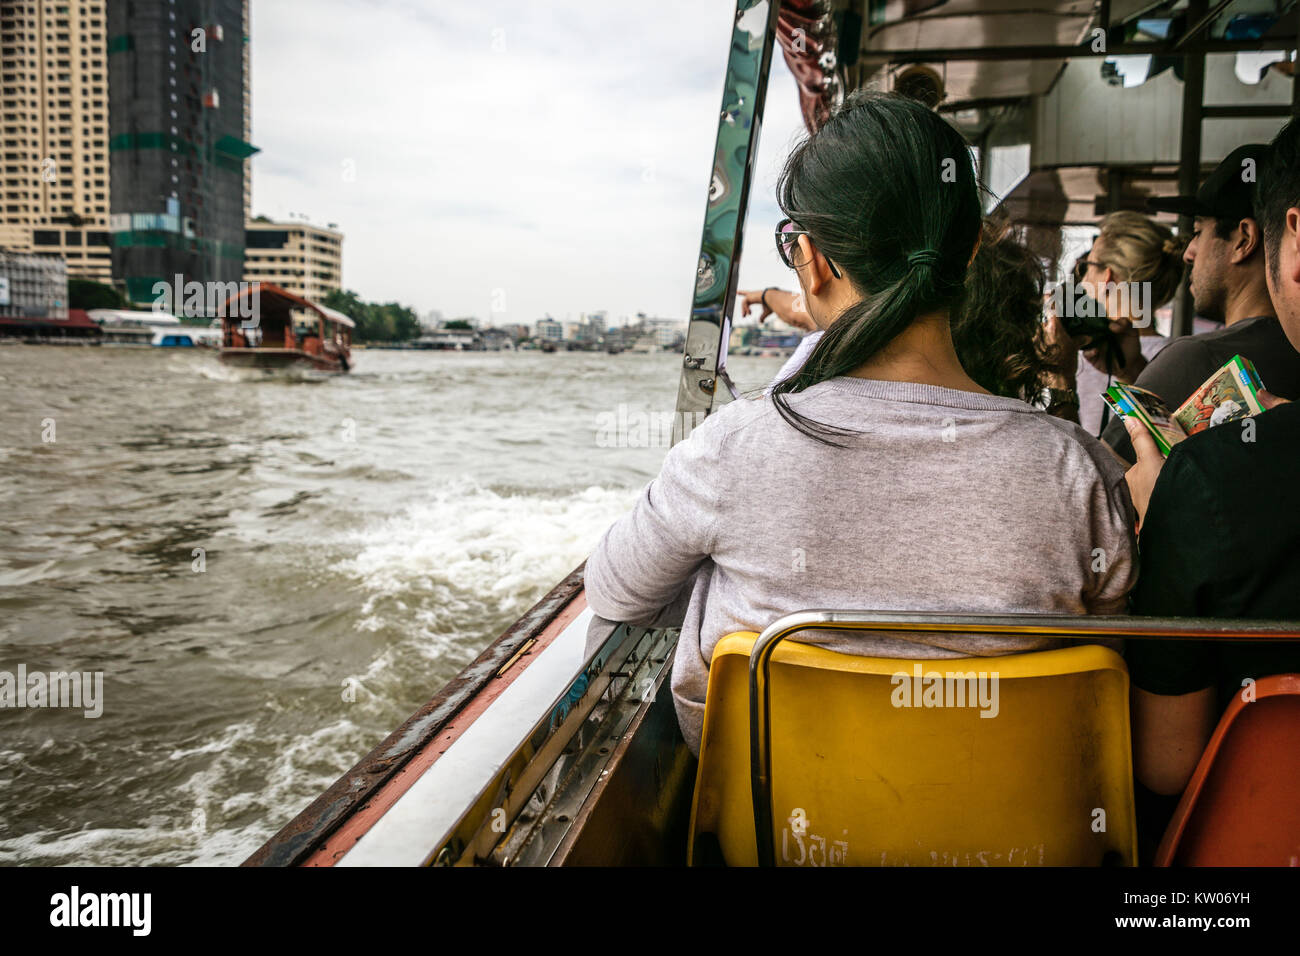 Tourists on ferry boat, Chao Phraya River, Bangkok, Thailand. Stock Photo